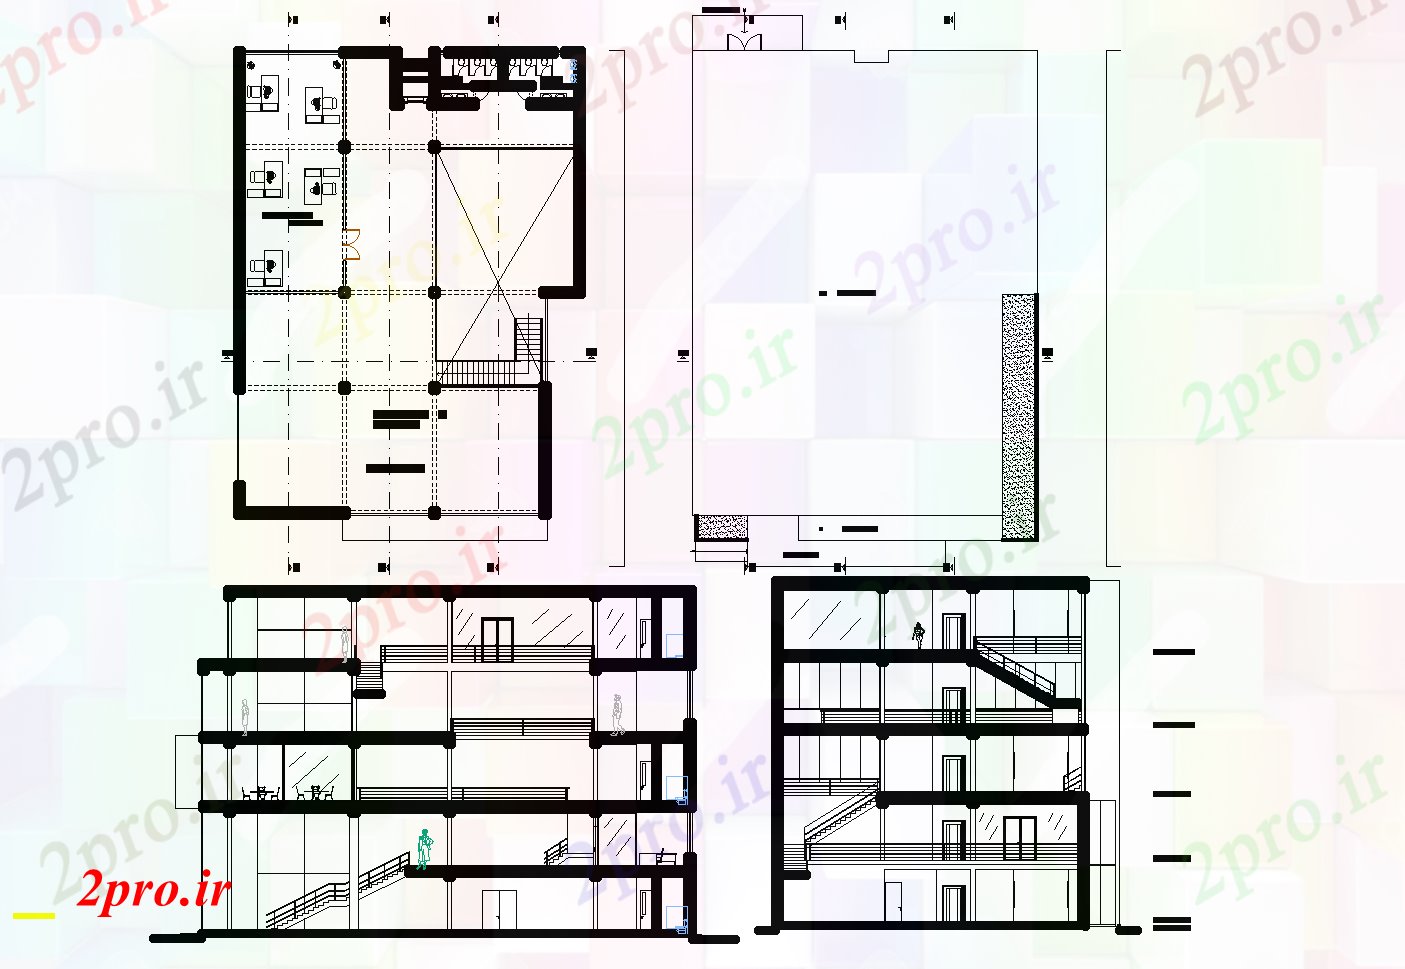 دانلود نقشه هایپر مارکت - مرکز خرید - فروشگاه تجاری طرحی ساختمان جزئیات 20 در 27 متر (کد75358)